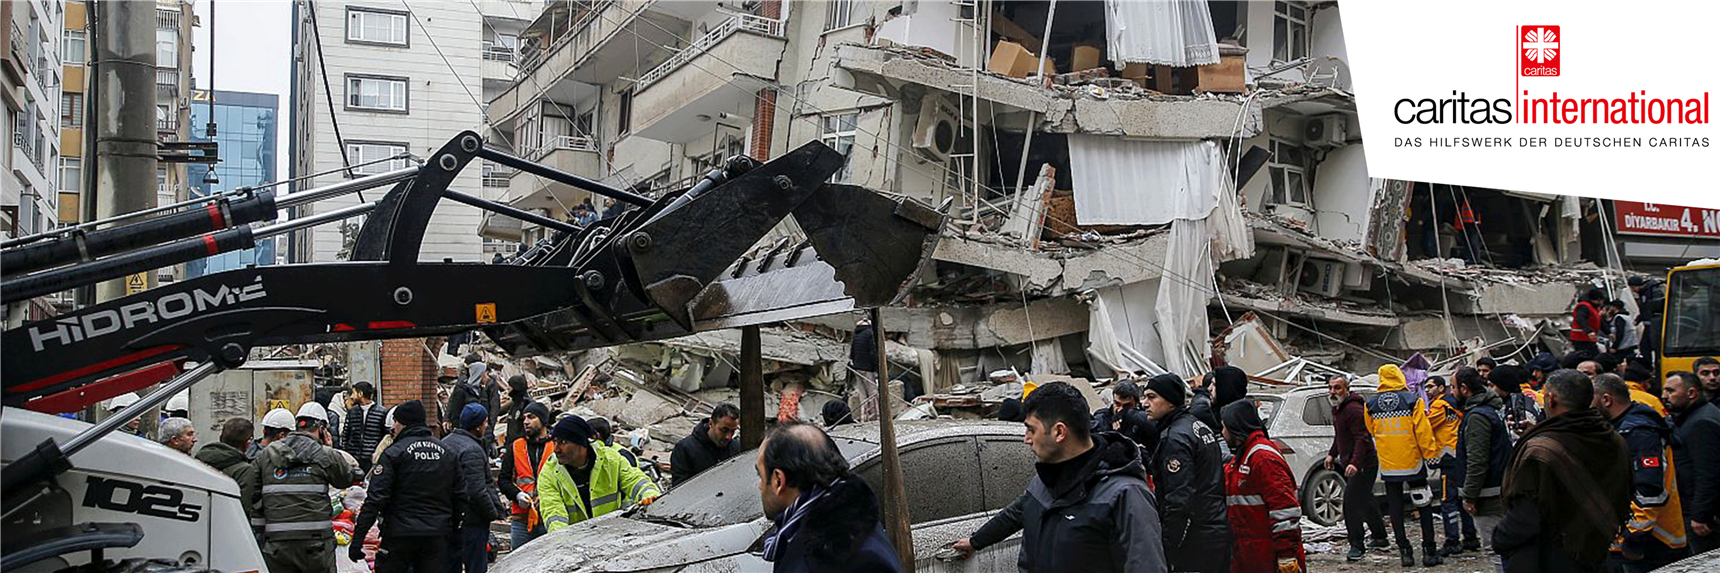 Menschen in der Türkei und in Syrien stehen vor den Trümmern eingestürzter Häuser. Die Caritas leistet Nothilfe vor Ort.  